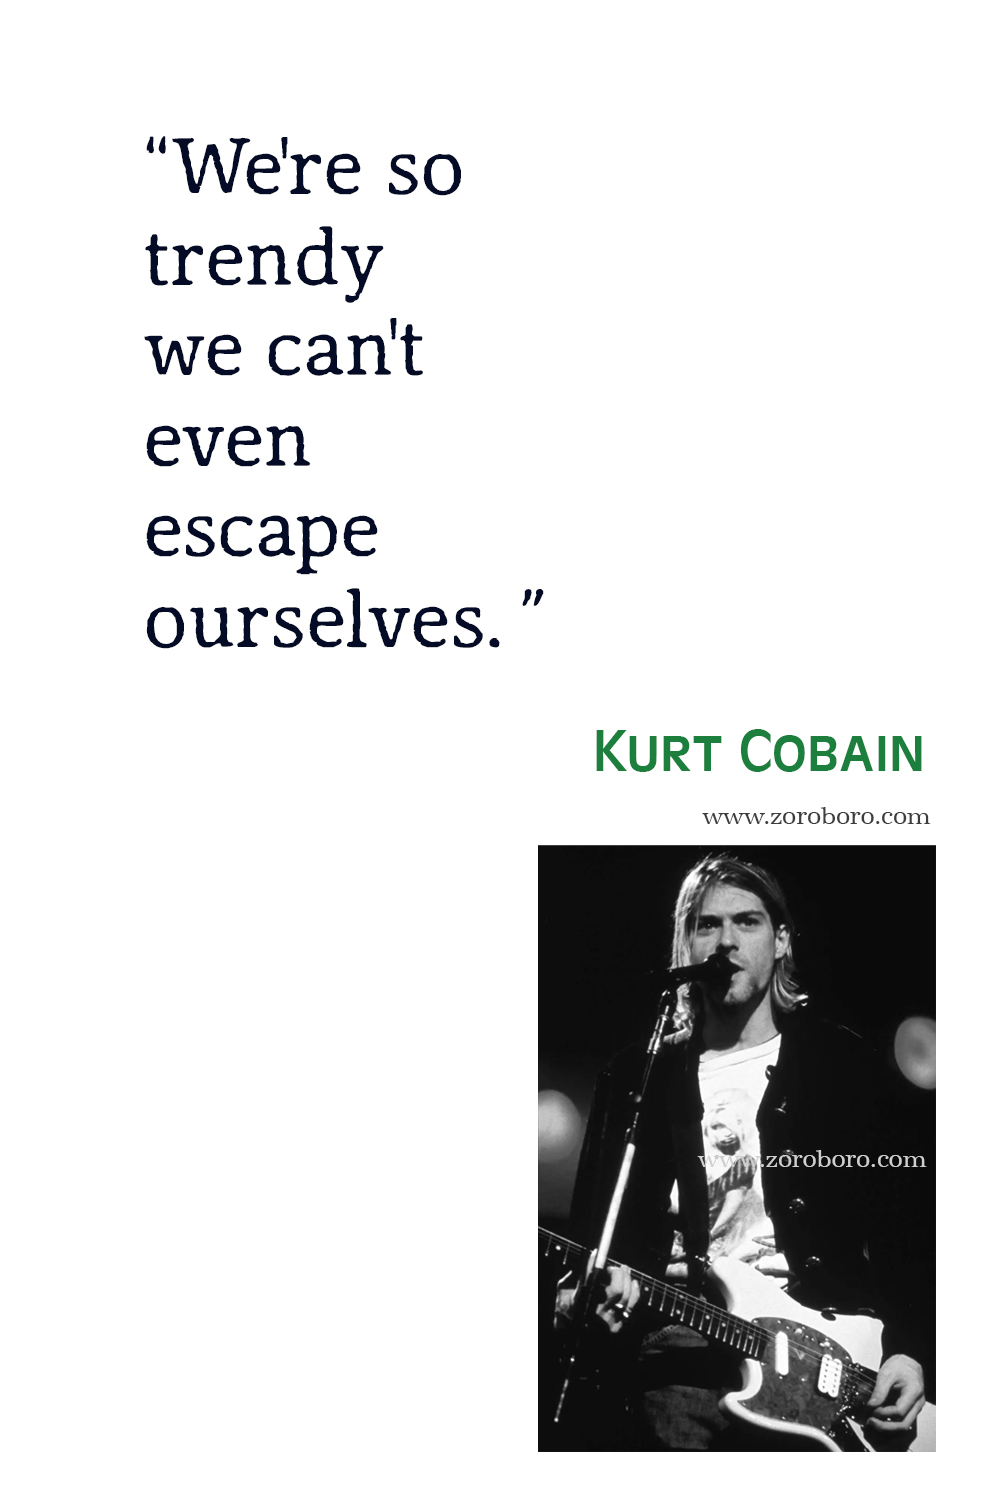 Kurt Cobain Quotes, Kurt Cobain Life Quotes, Kurt Cobain Love Quotes, Kurt Cobain Death Quotes, Kurt Cobain Fame Quotes, Kurt Cobain Quotes.